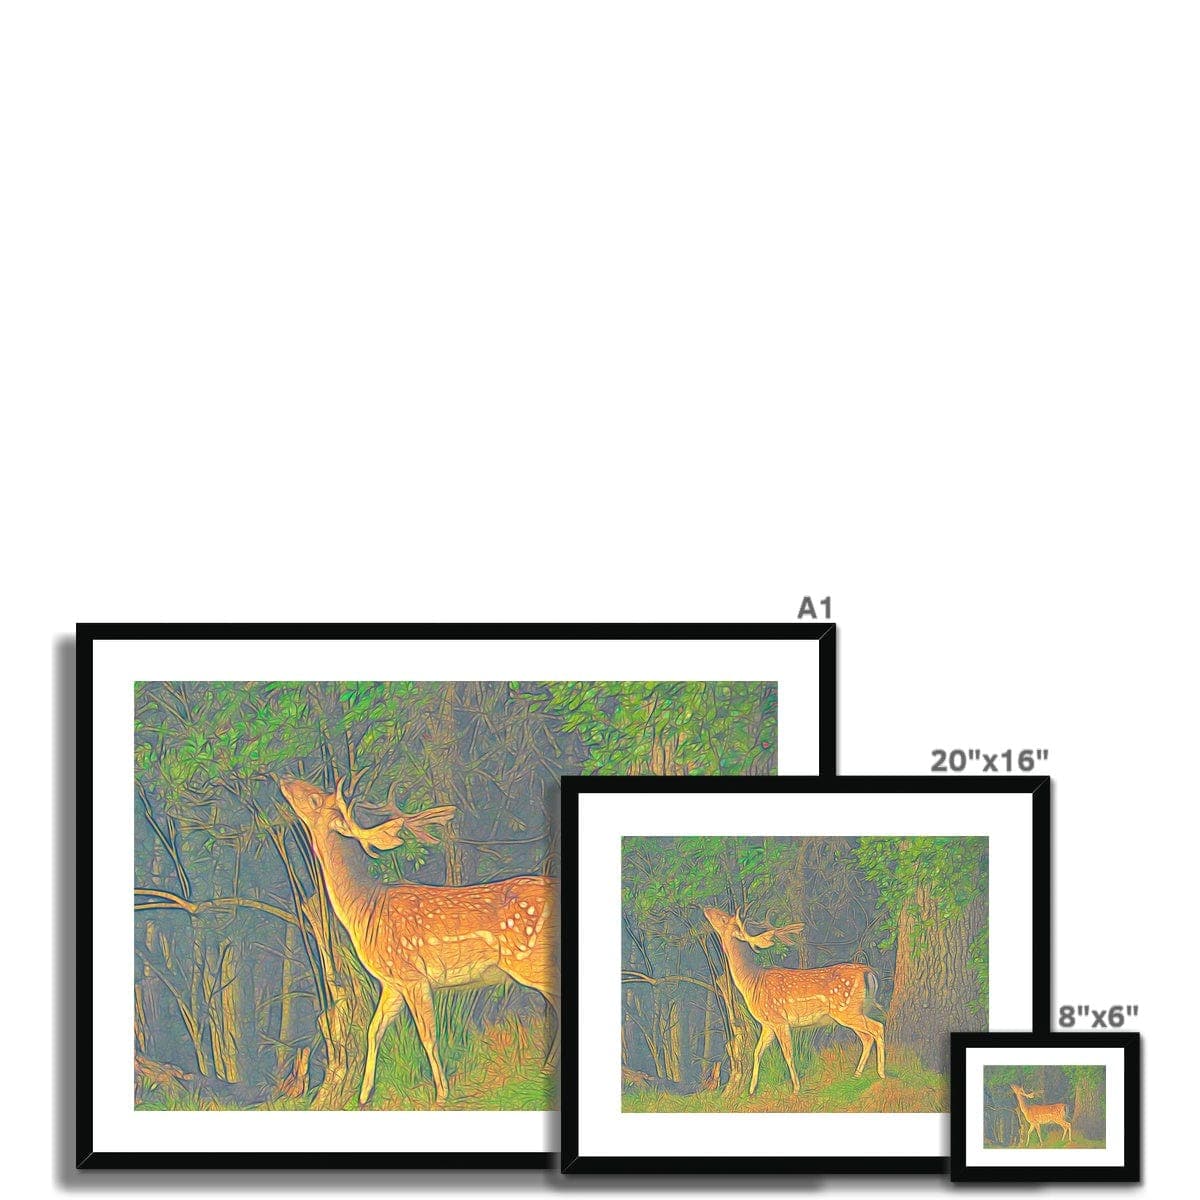 Young deer, Framed & Mounted Print, by Ingrid Hütten